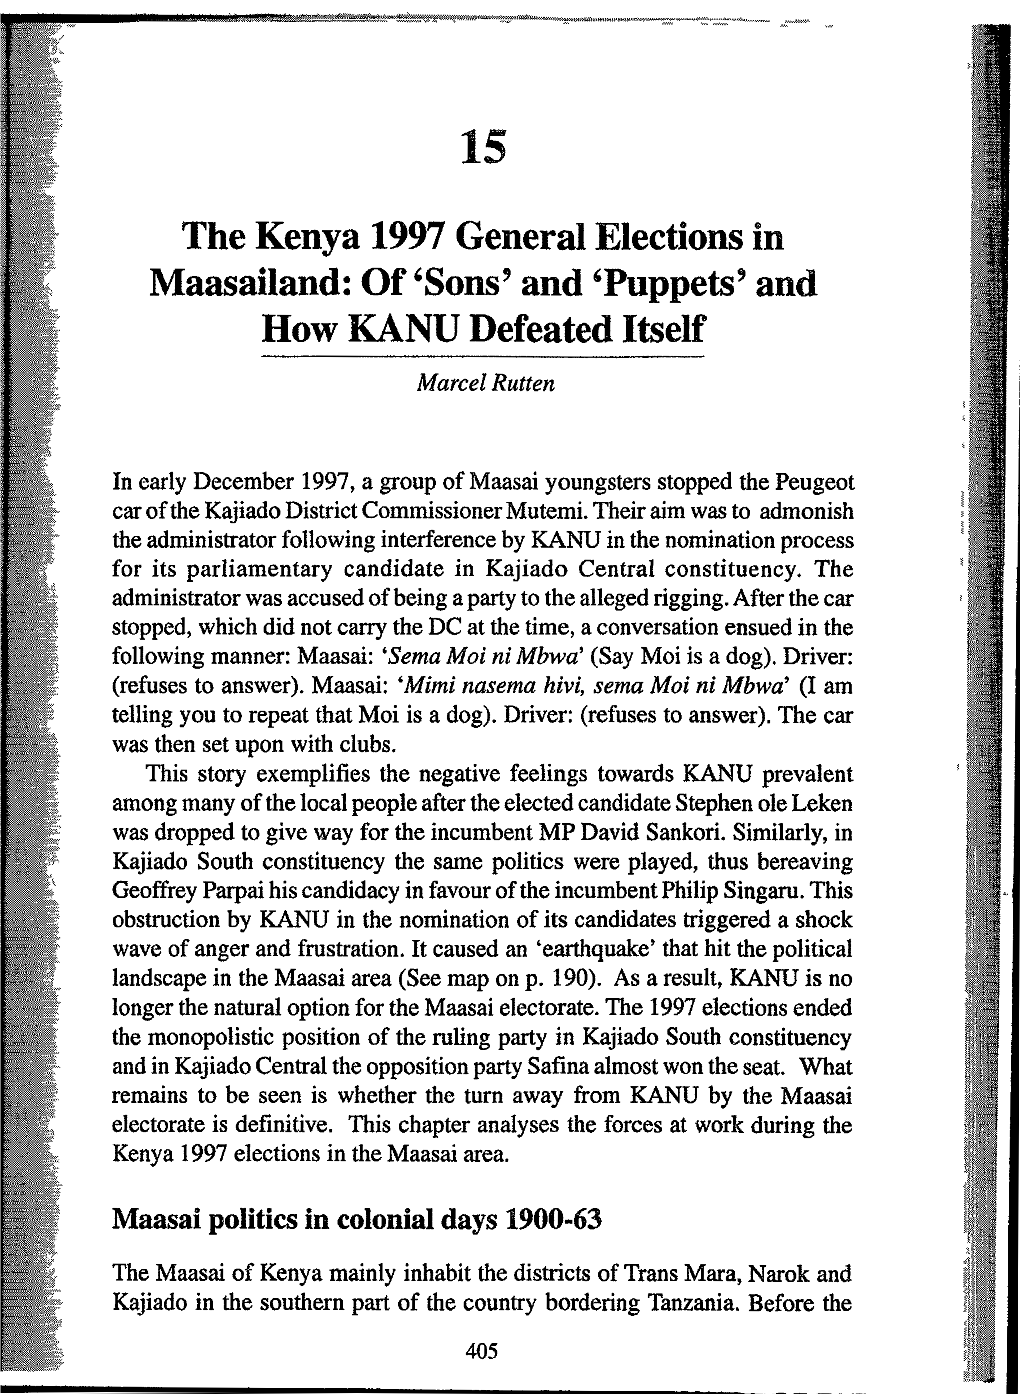 The Kenya 1997 General Elections in Maasailand